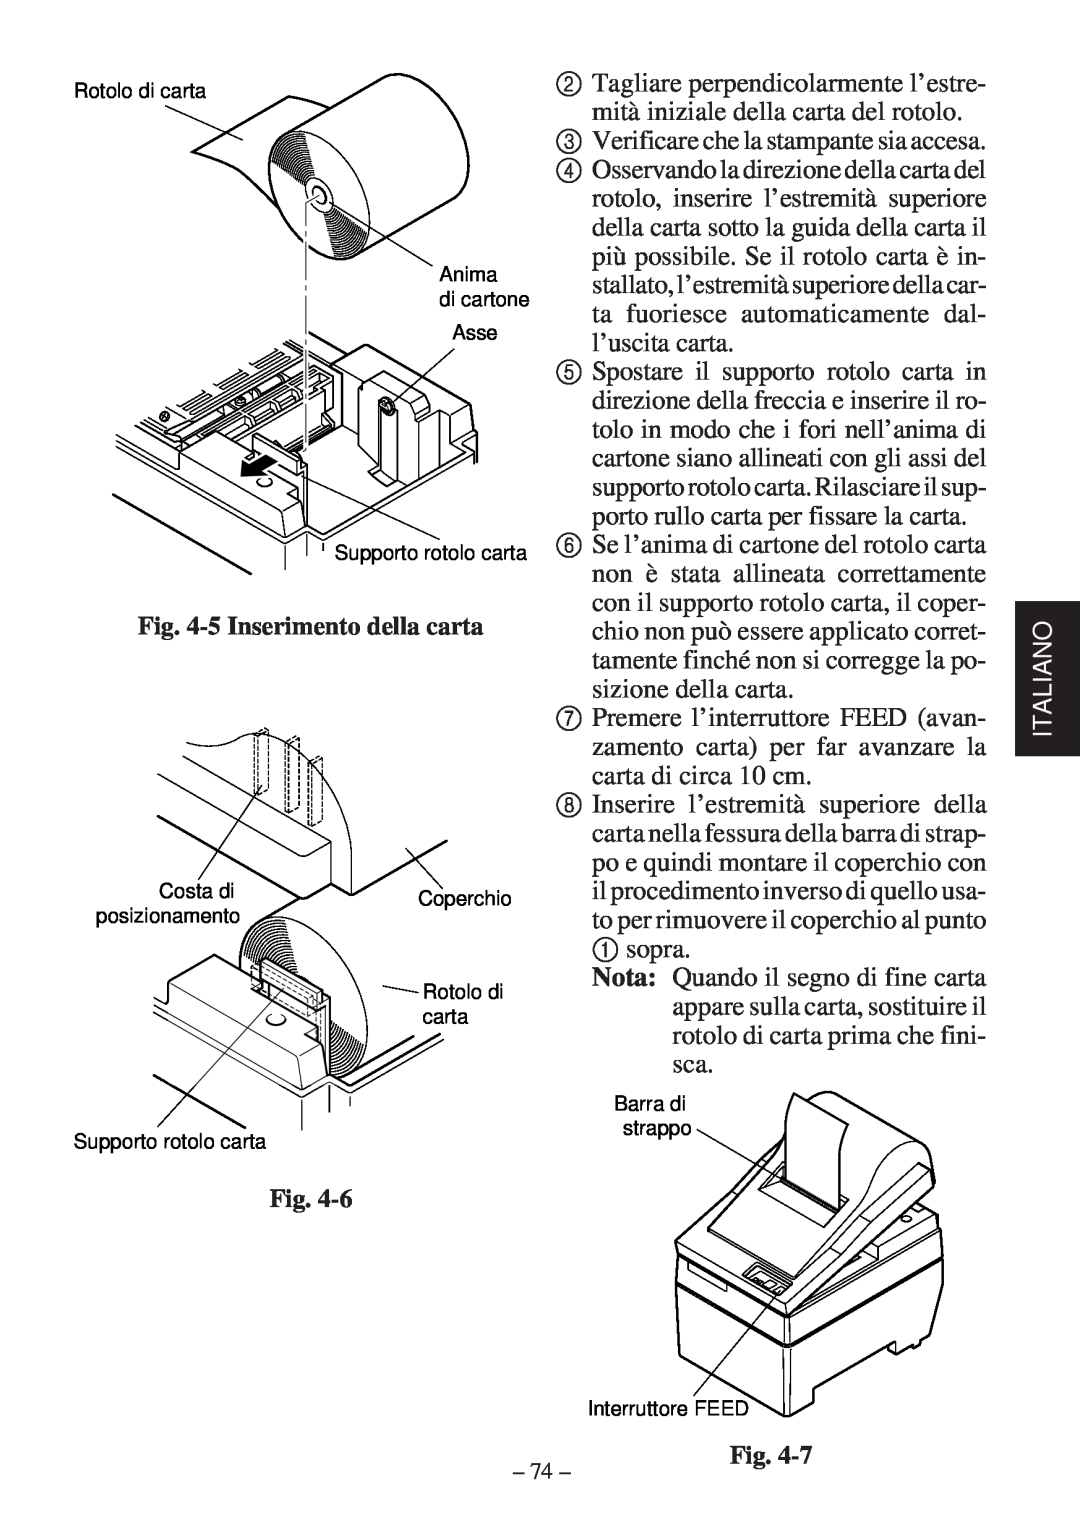 Star Micronics SP200F user manual Verificare che la stampante sia accesa 